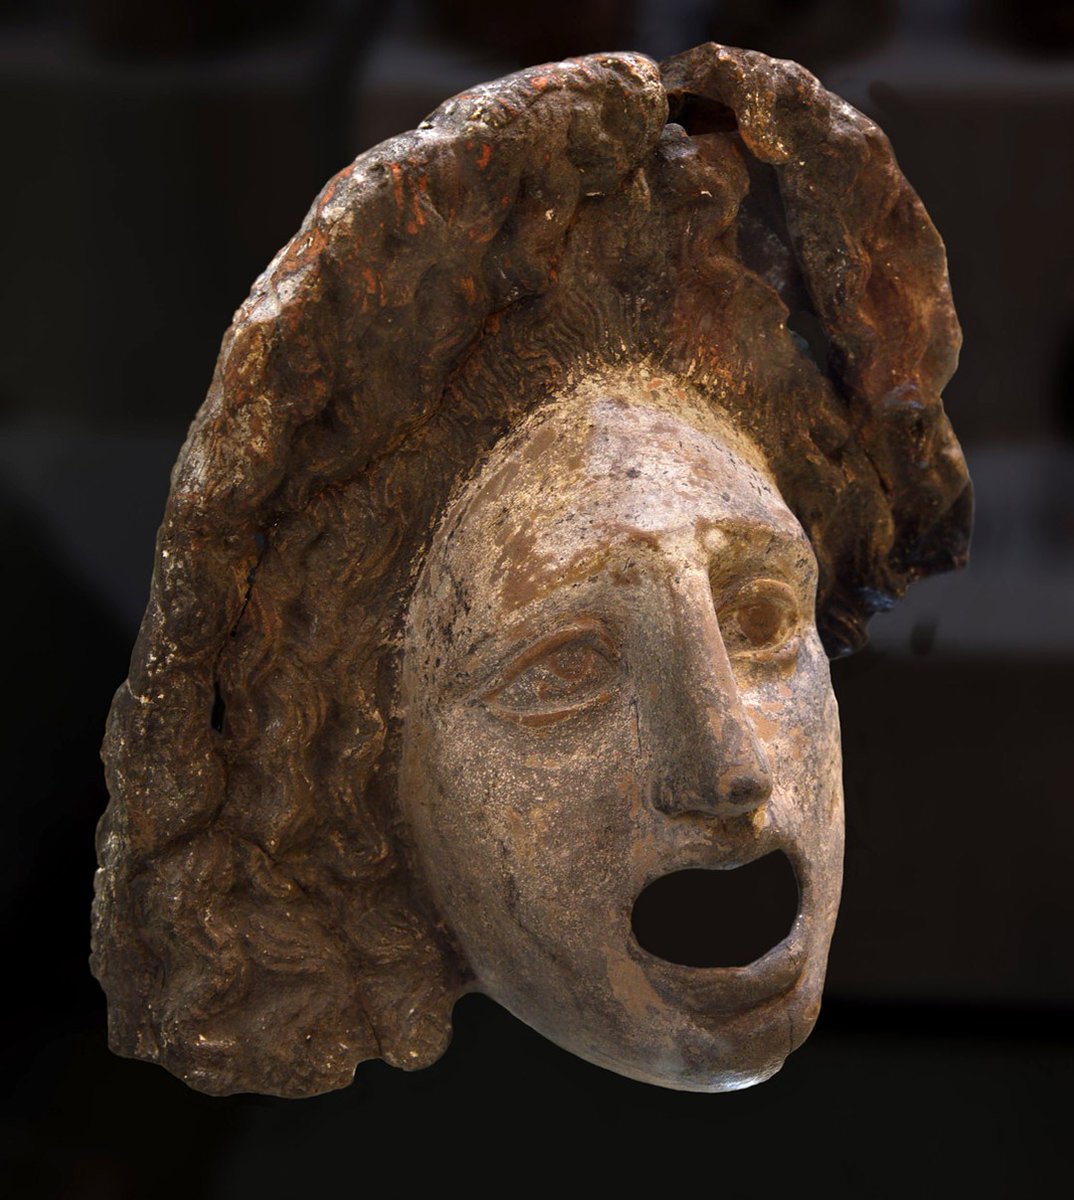 Tragedya oyunlarında kullanılan ve katákomos ōchrá olarak kategorize edilen bir tiyatro maskı. Boyalı pişmiş topraktan. MÖ 4. yüzyıla tarihlenen eser, İtalya'nın Lipari bölgesinden. Mandralisca Müzesi'nde sergileniyor.

📷Ilya Shurygin